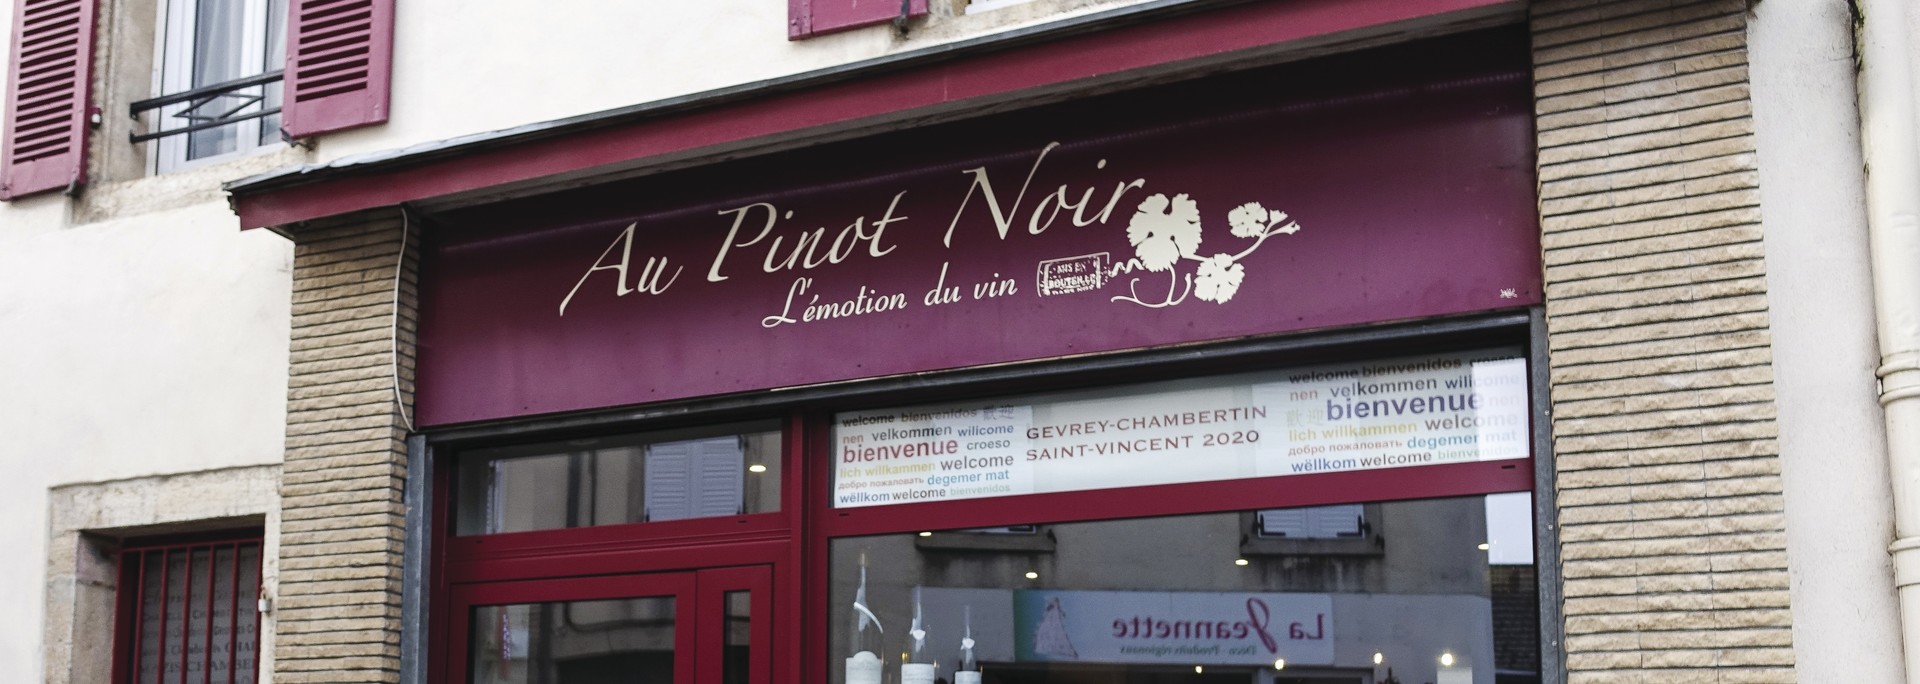 Boutique AU PINOT NOIR - Cte-d'Or